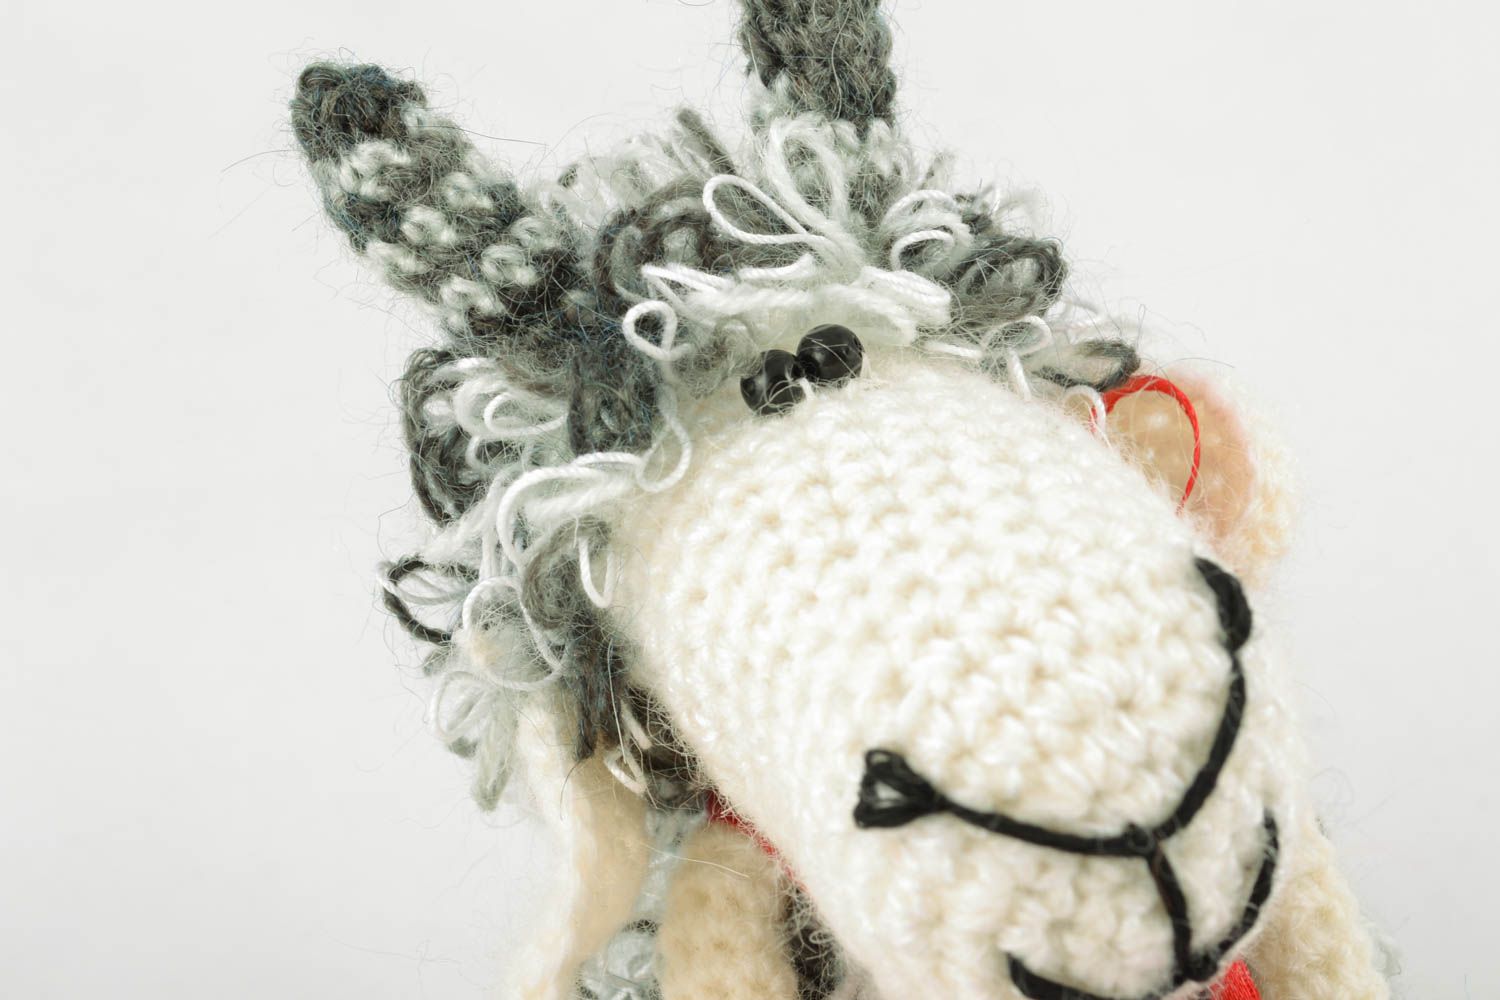 Soft crochet toy Fluffy Sheep photo 3